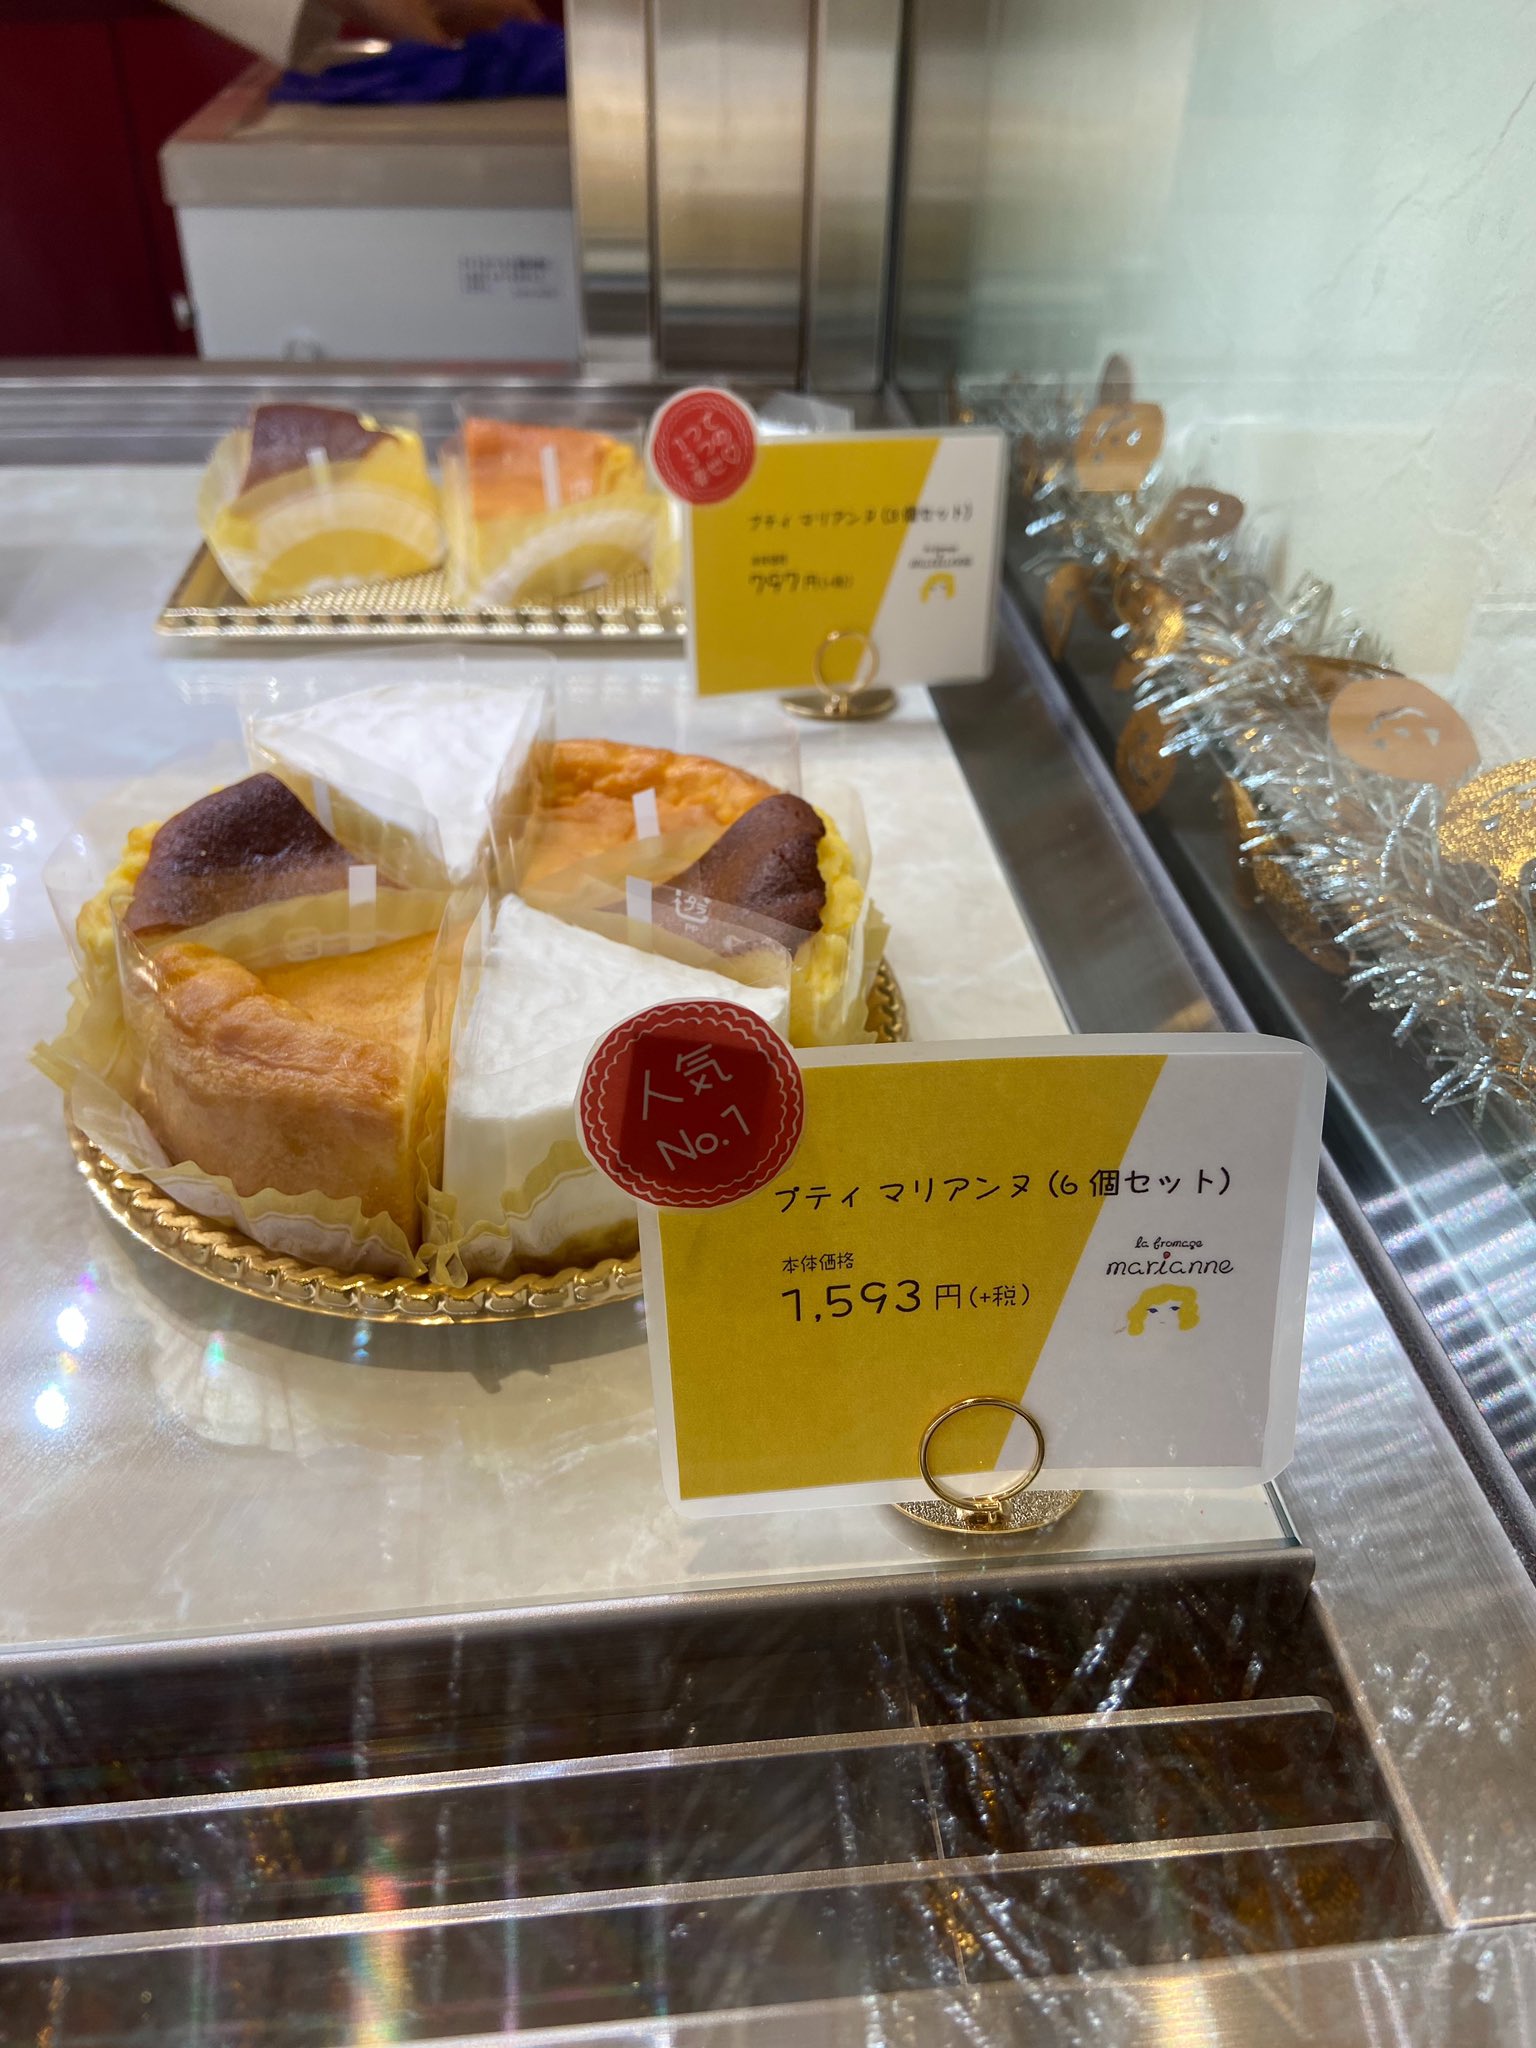 تويتر Mid Fm761 على تويتر Mid Sound Flower Cafe Paradiseでは 名古屋市天白区元植田にある チーズケーキ専門店 ラ フロマージュ マリアンヌ の 超美味しいチーズケーキ プティマリアンヌ を紹介しました ただいま ハロウィンイベント